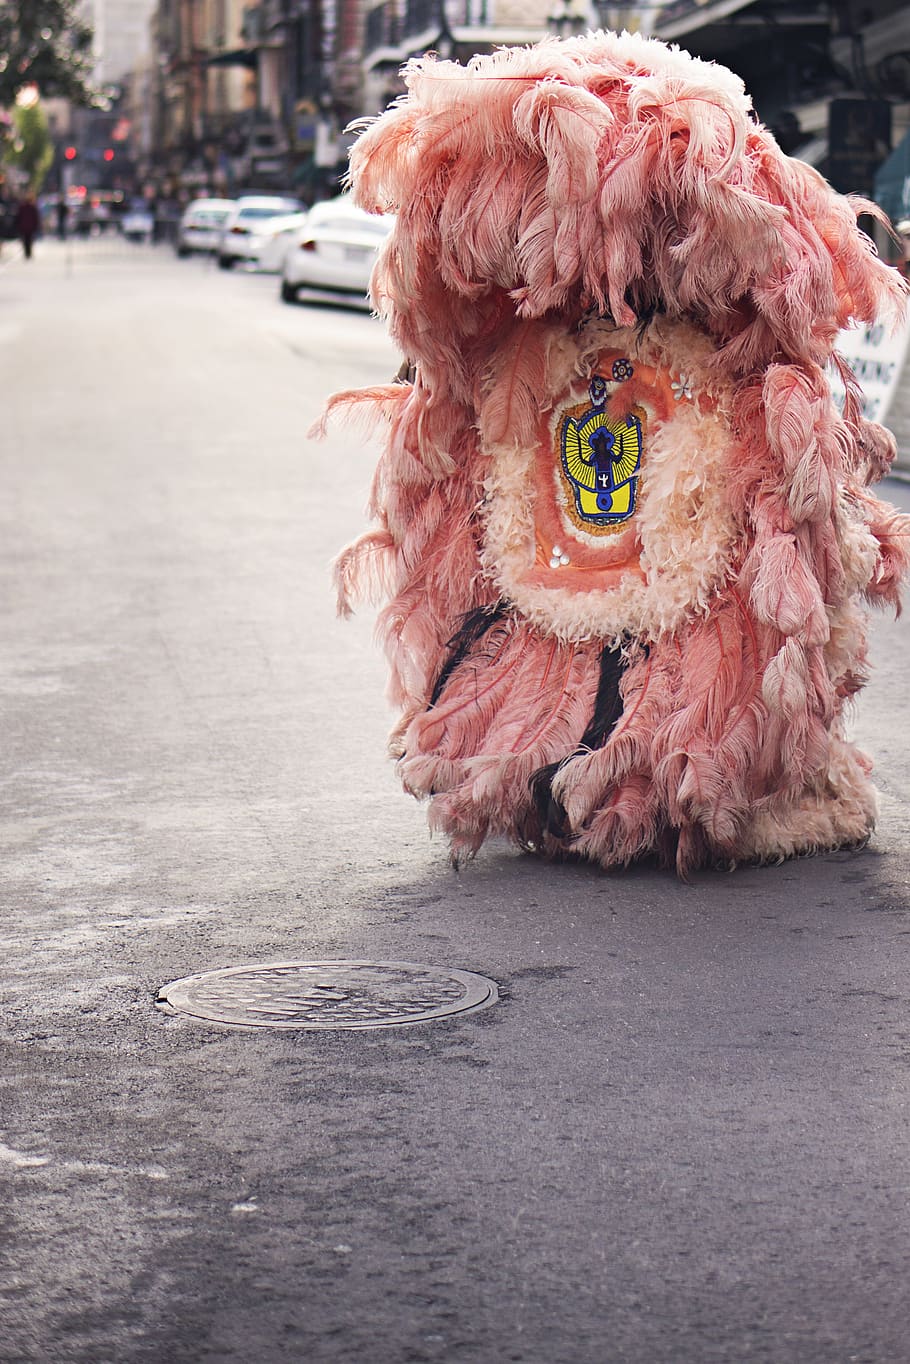 merah muda, kostum, bulu, jalan, trotoar, lubang got, kota, fokus pada latar depan, hari, hewan